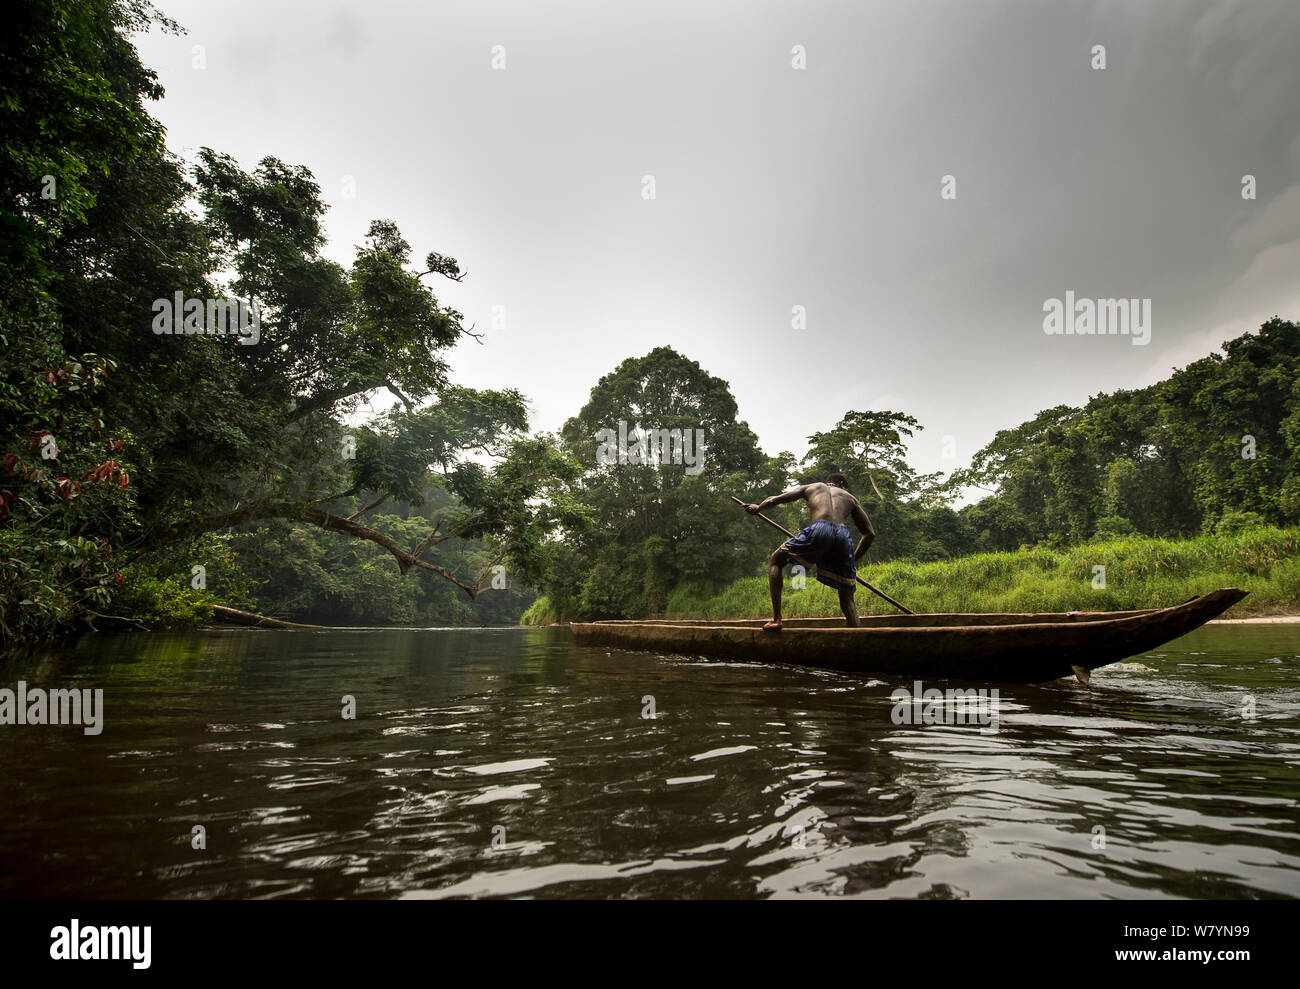 Pêcheur sur la rivière, Parc National de la Salonga, République démocratique du Congo. Septembre 2009. Banque D'Images